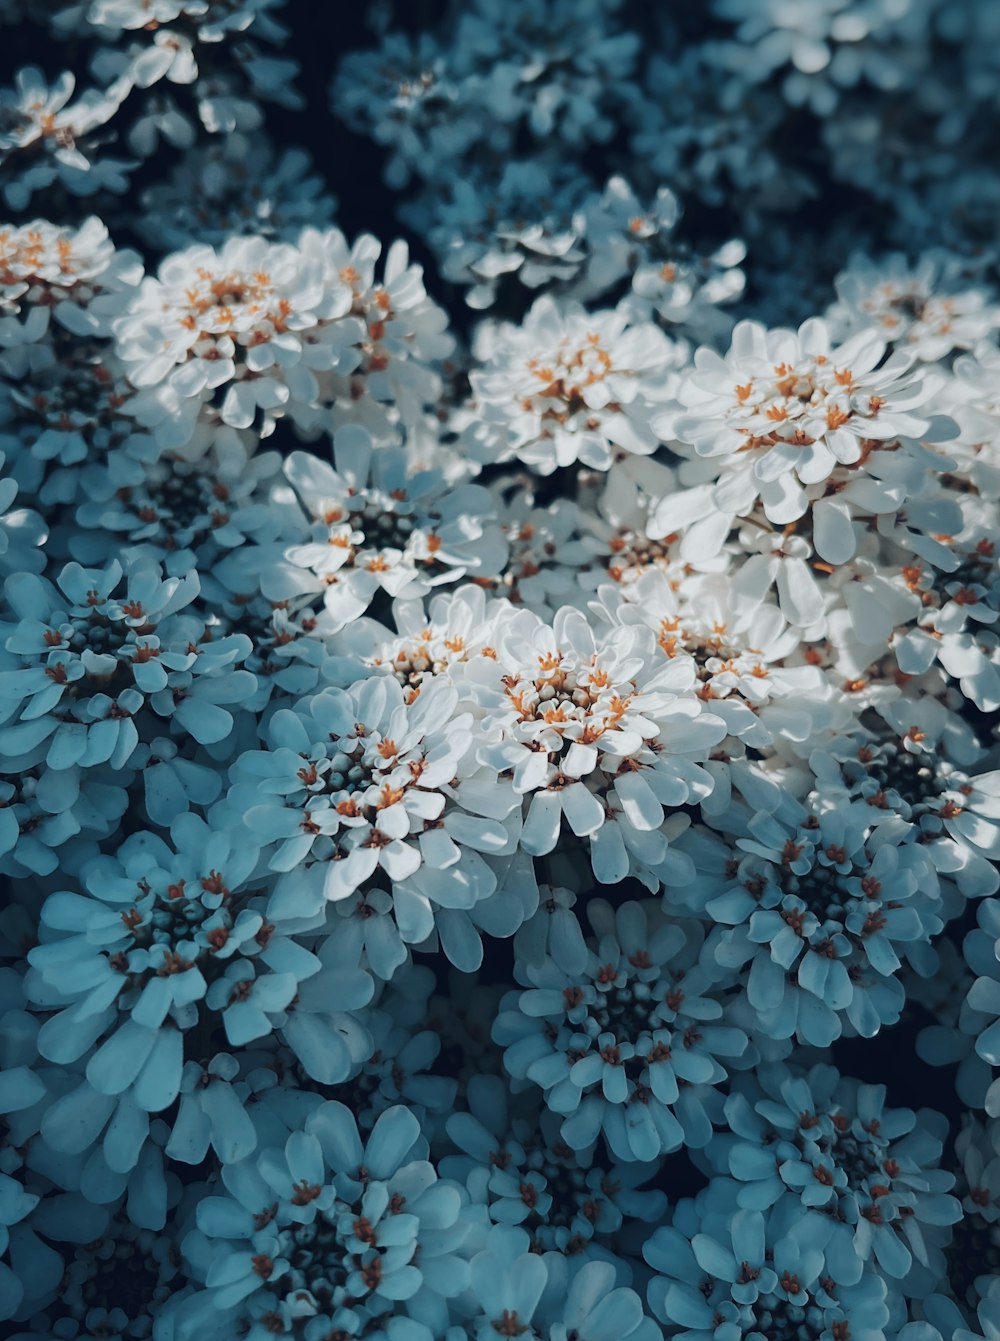 緑の葉と青い花の写真 Unsplashの無料自然写真